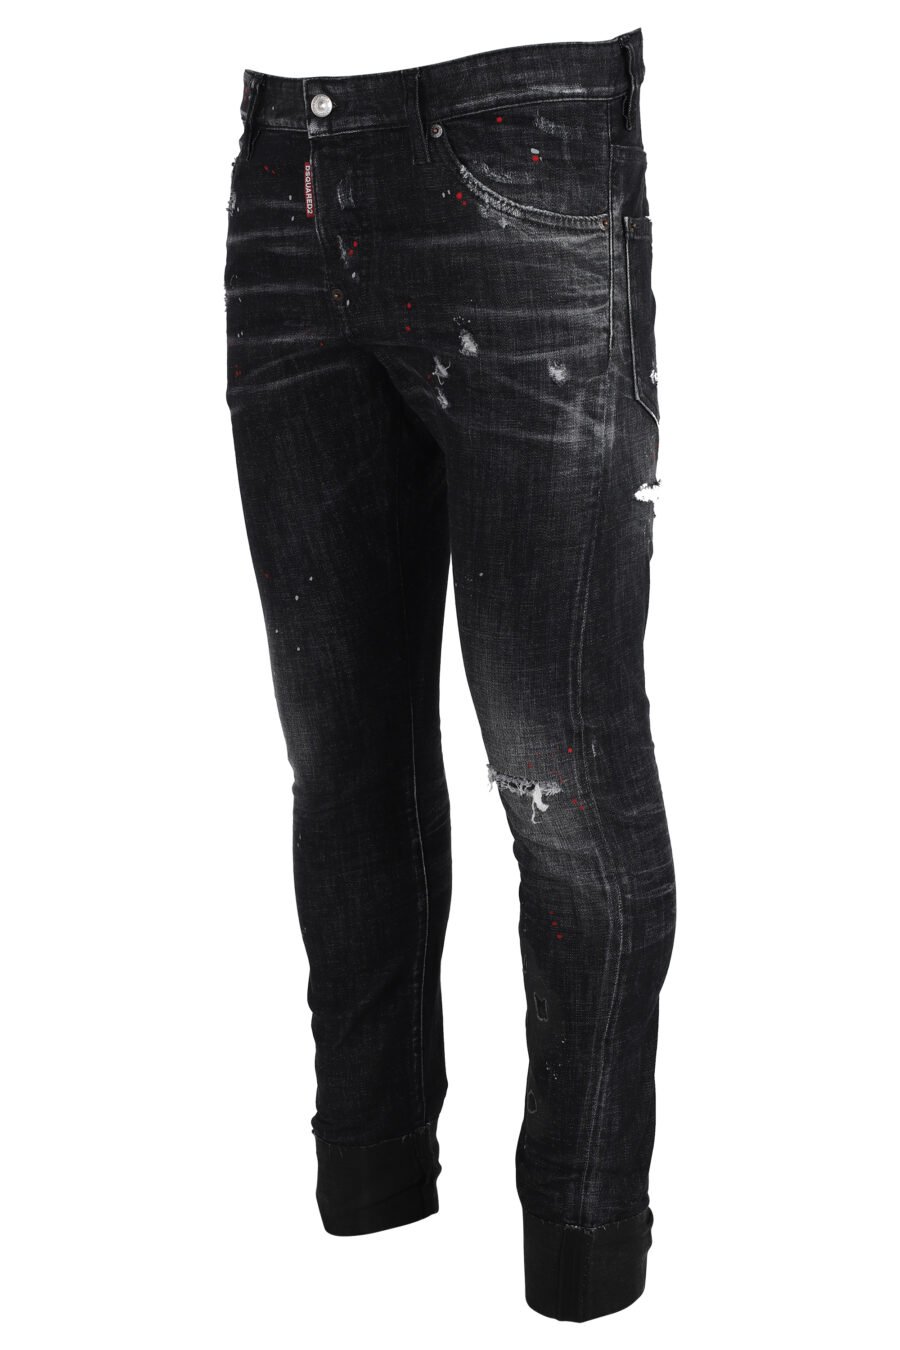 Sexy Twist-Denim-Jeans, schwarz ausgefranst - IMG 4853